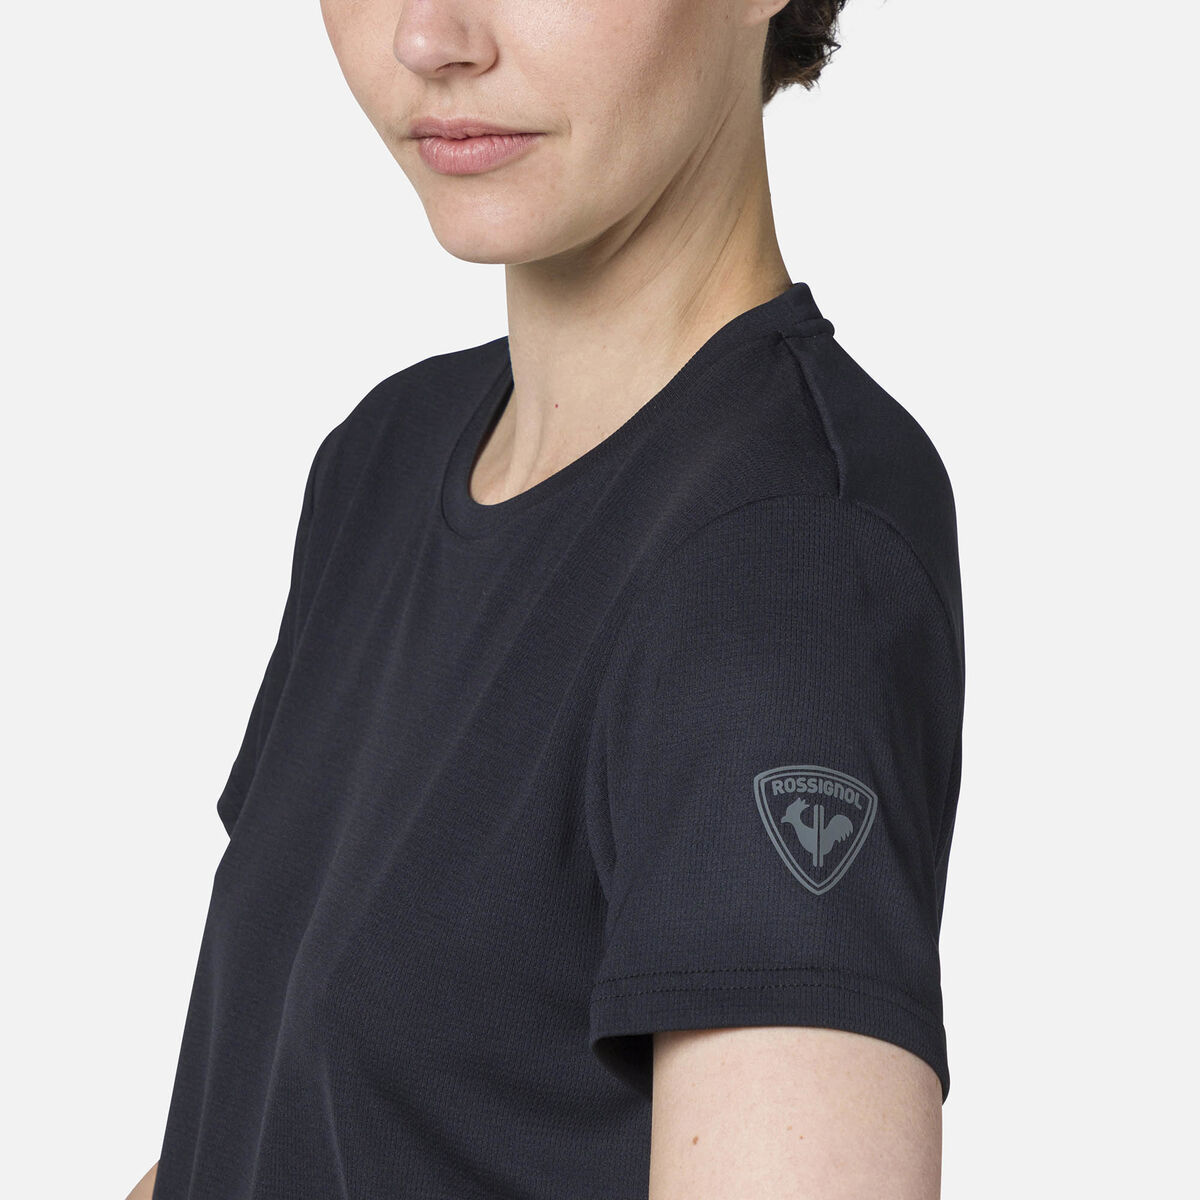 Rossignol T-shirt de randonnée Plain Femme black